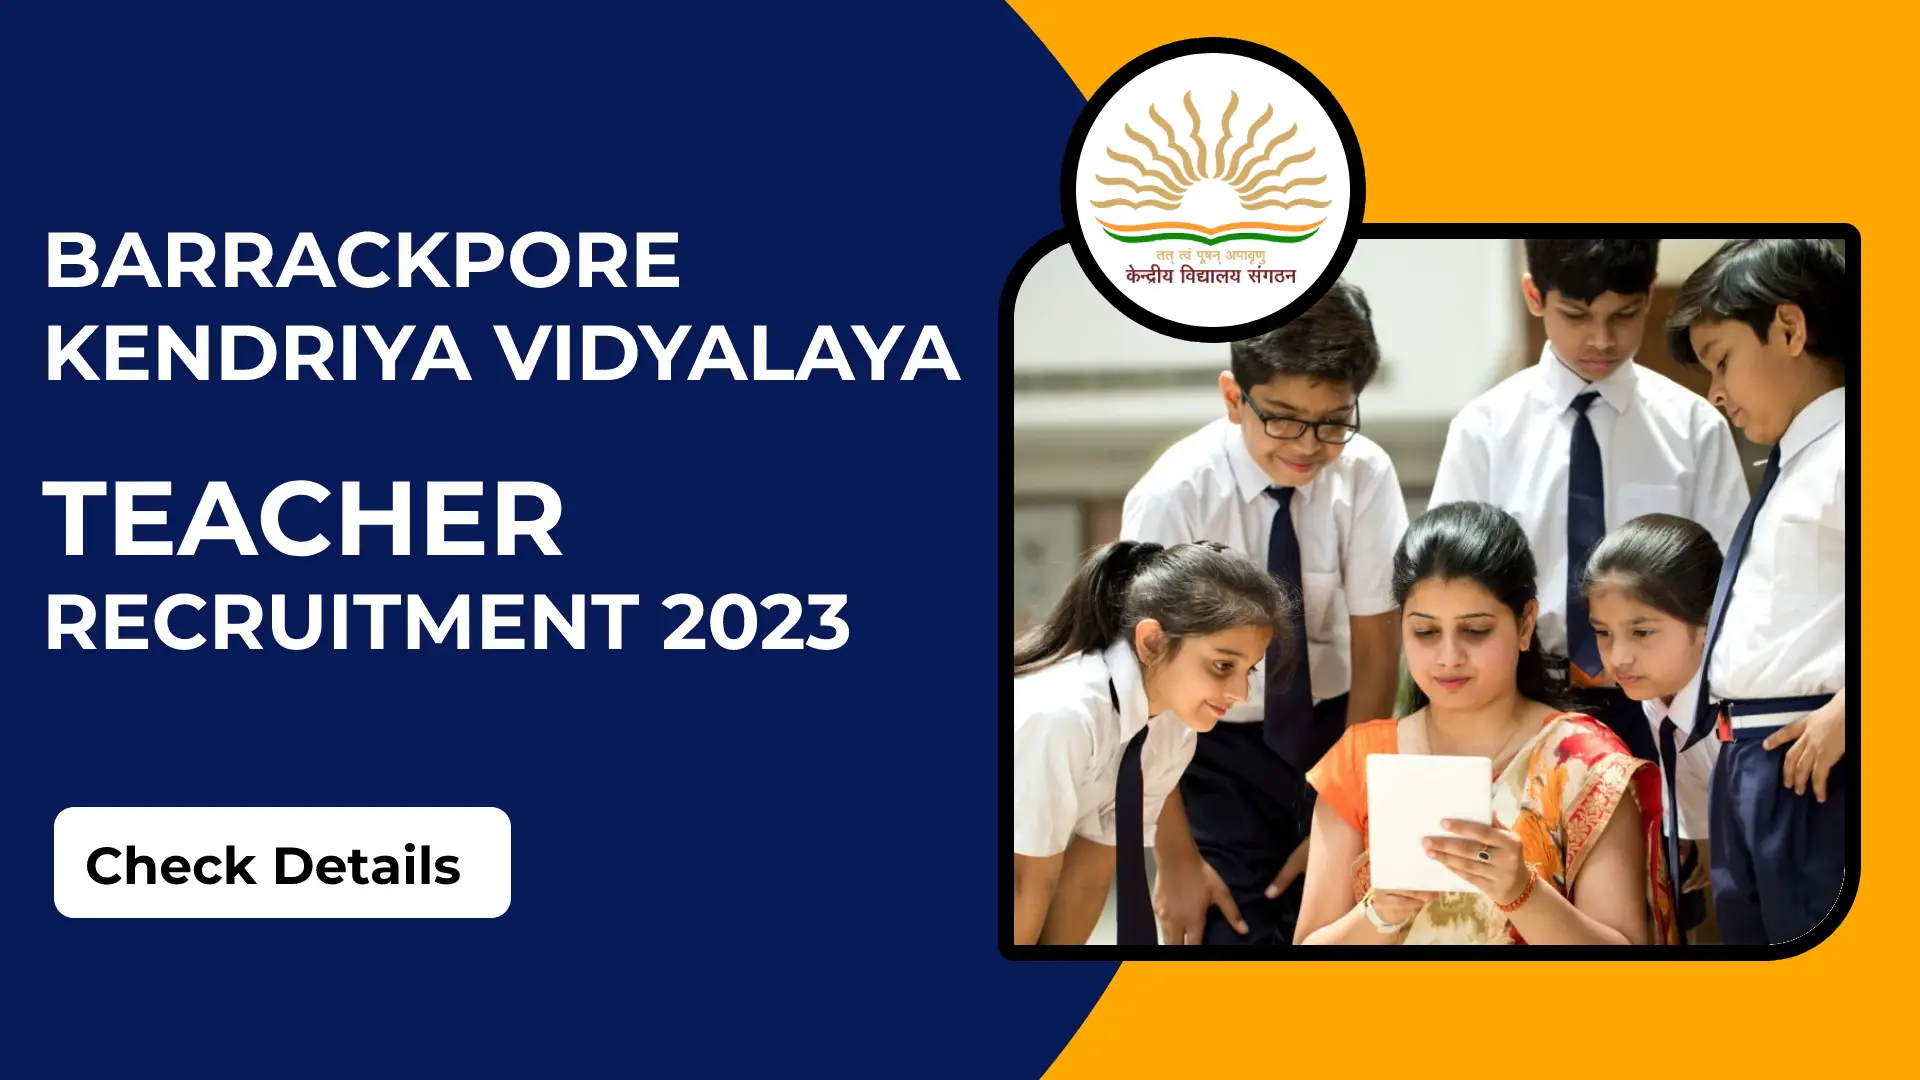 Barrackpore Kendriya Vidyalaya Teacher Recruitment 2023